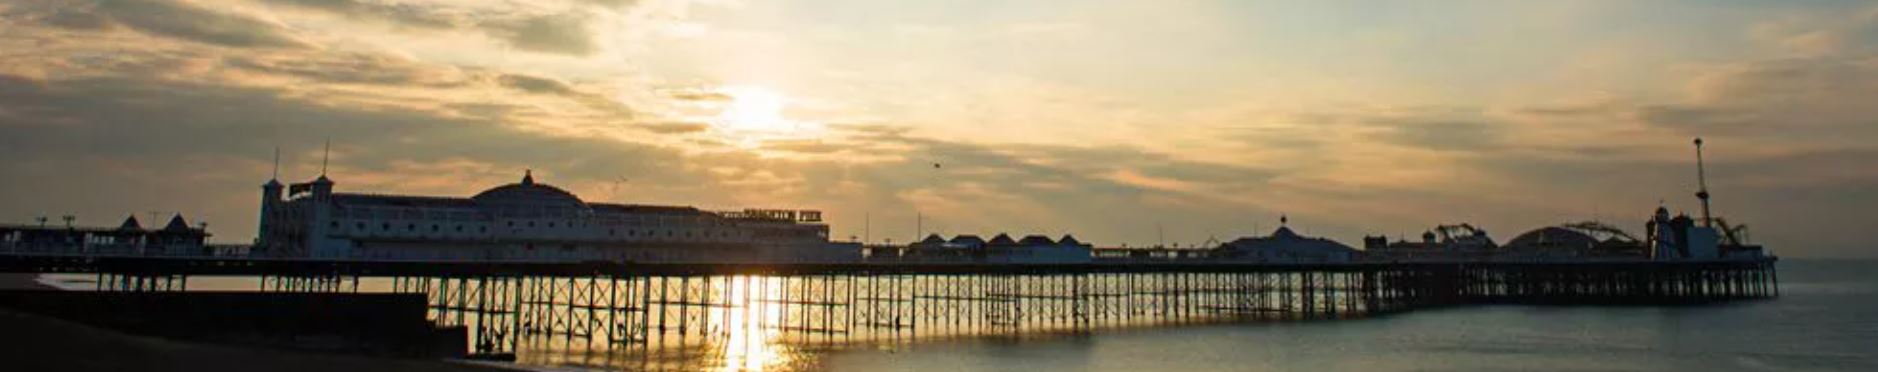 Brighton pier at sunrise